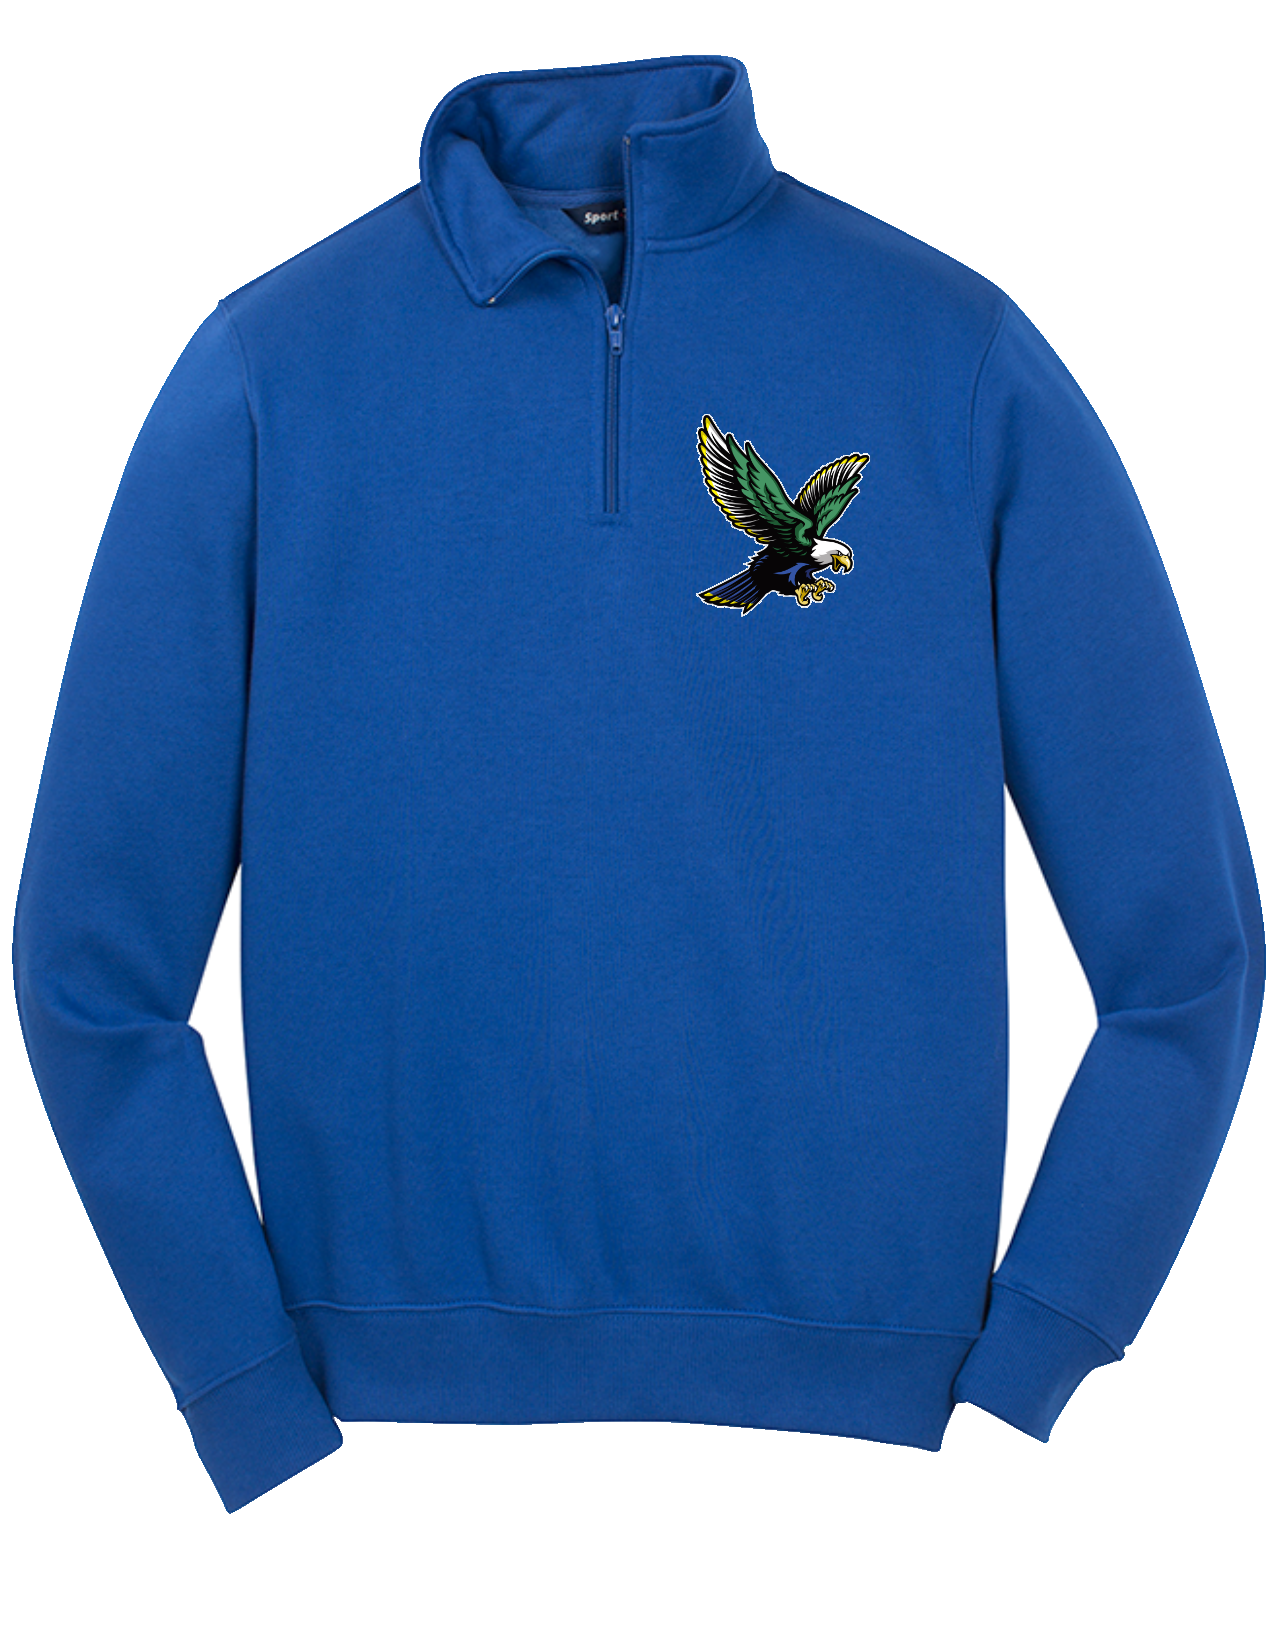 Sport-Tek 1/4-Zip Sweatshirt Pullover